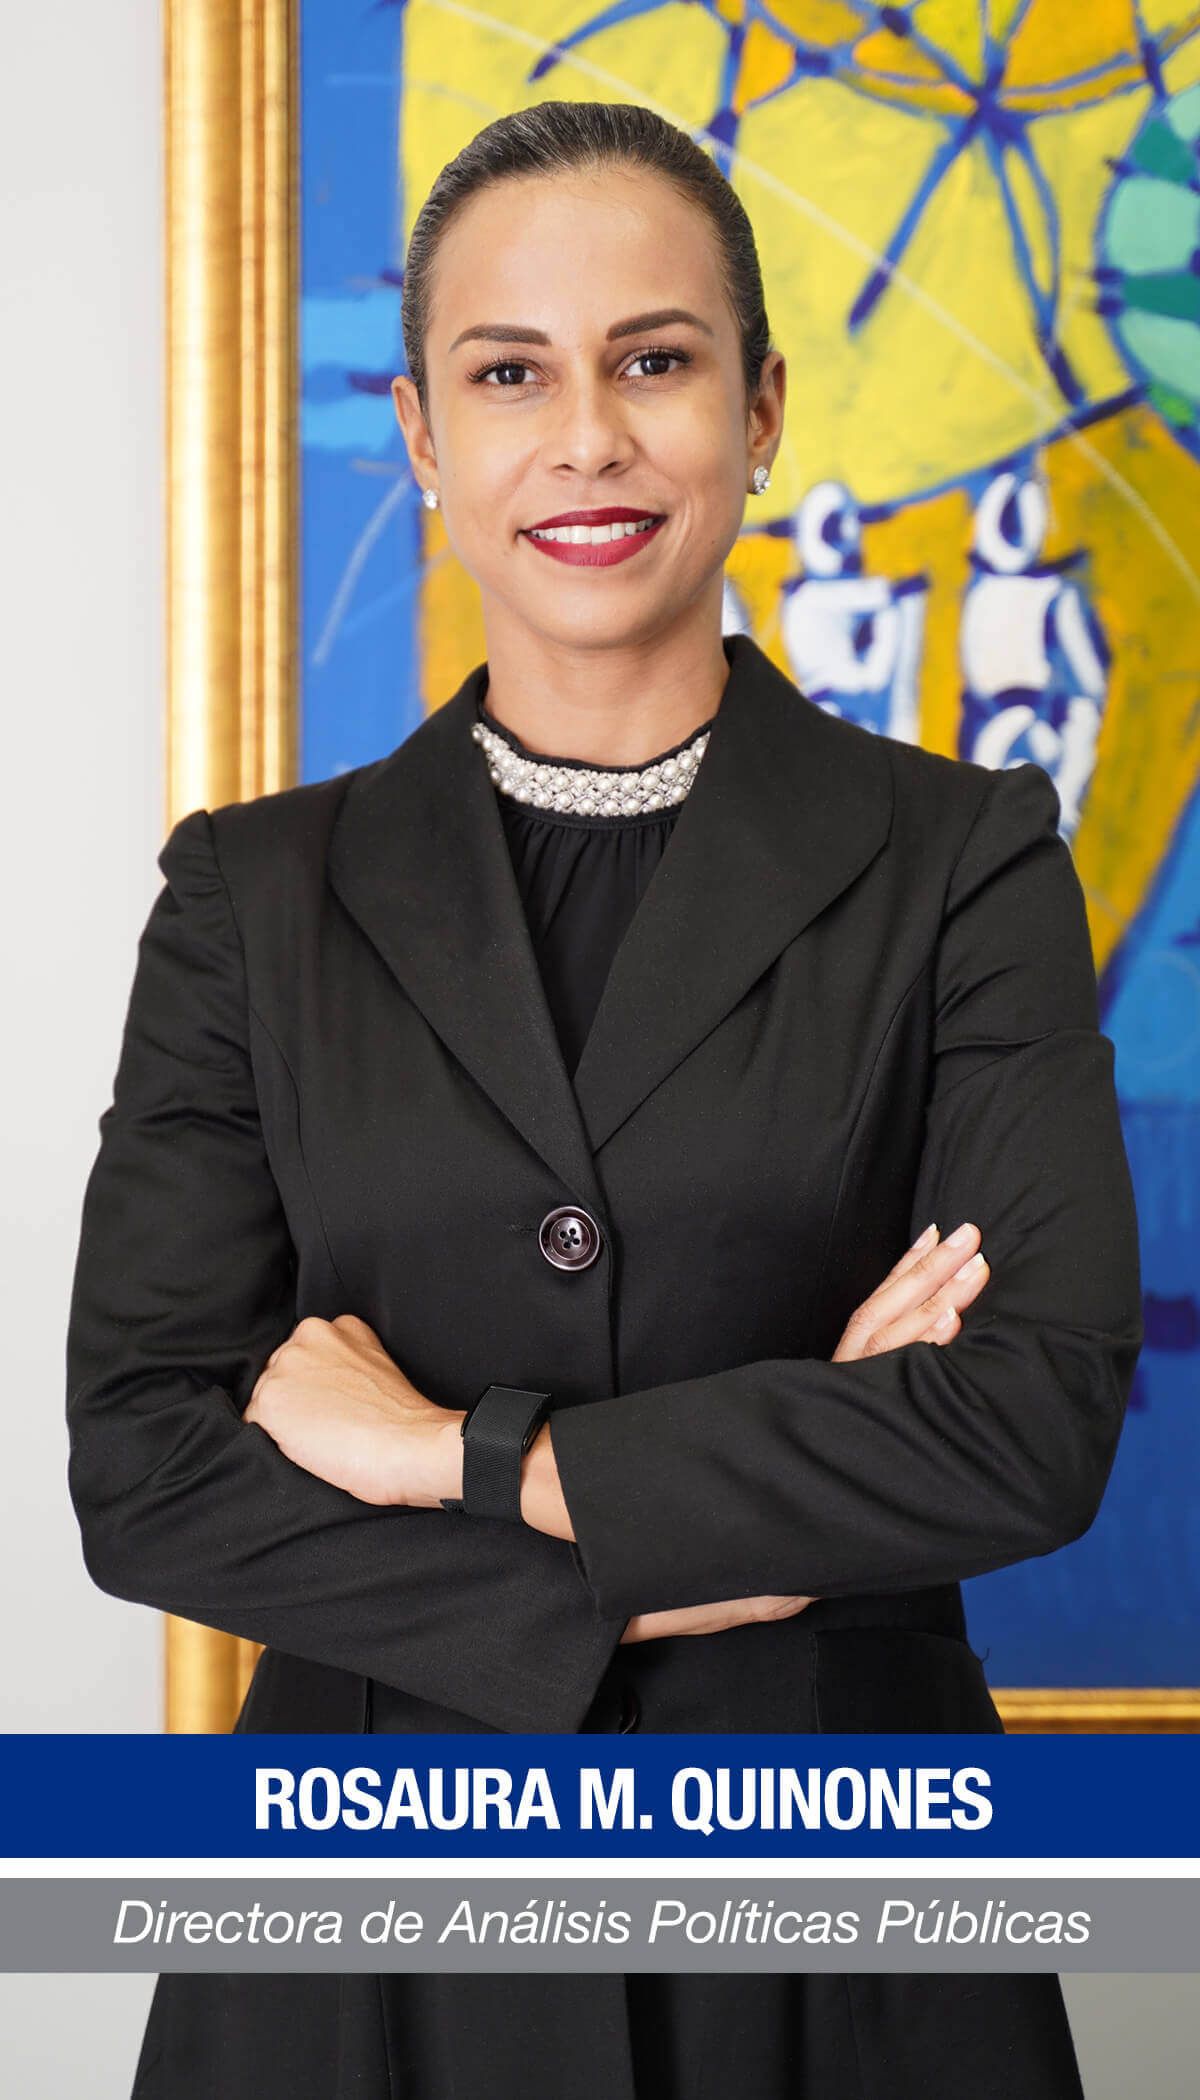 Rosaura M. Quiñones